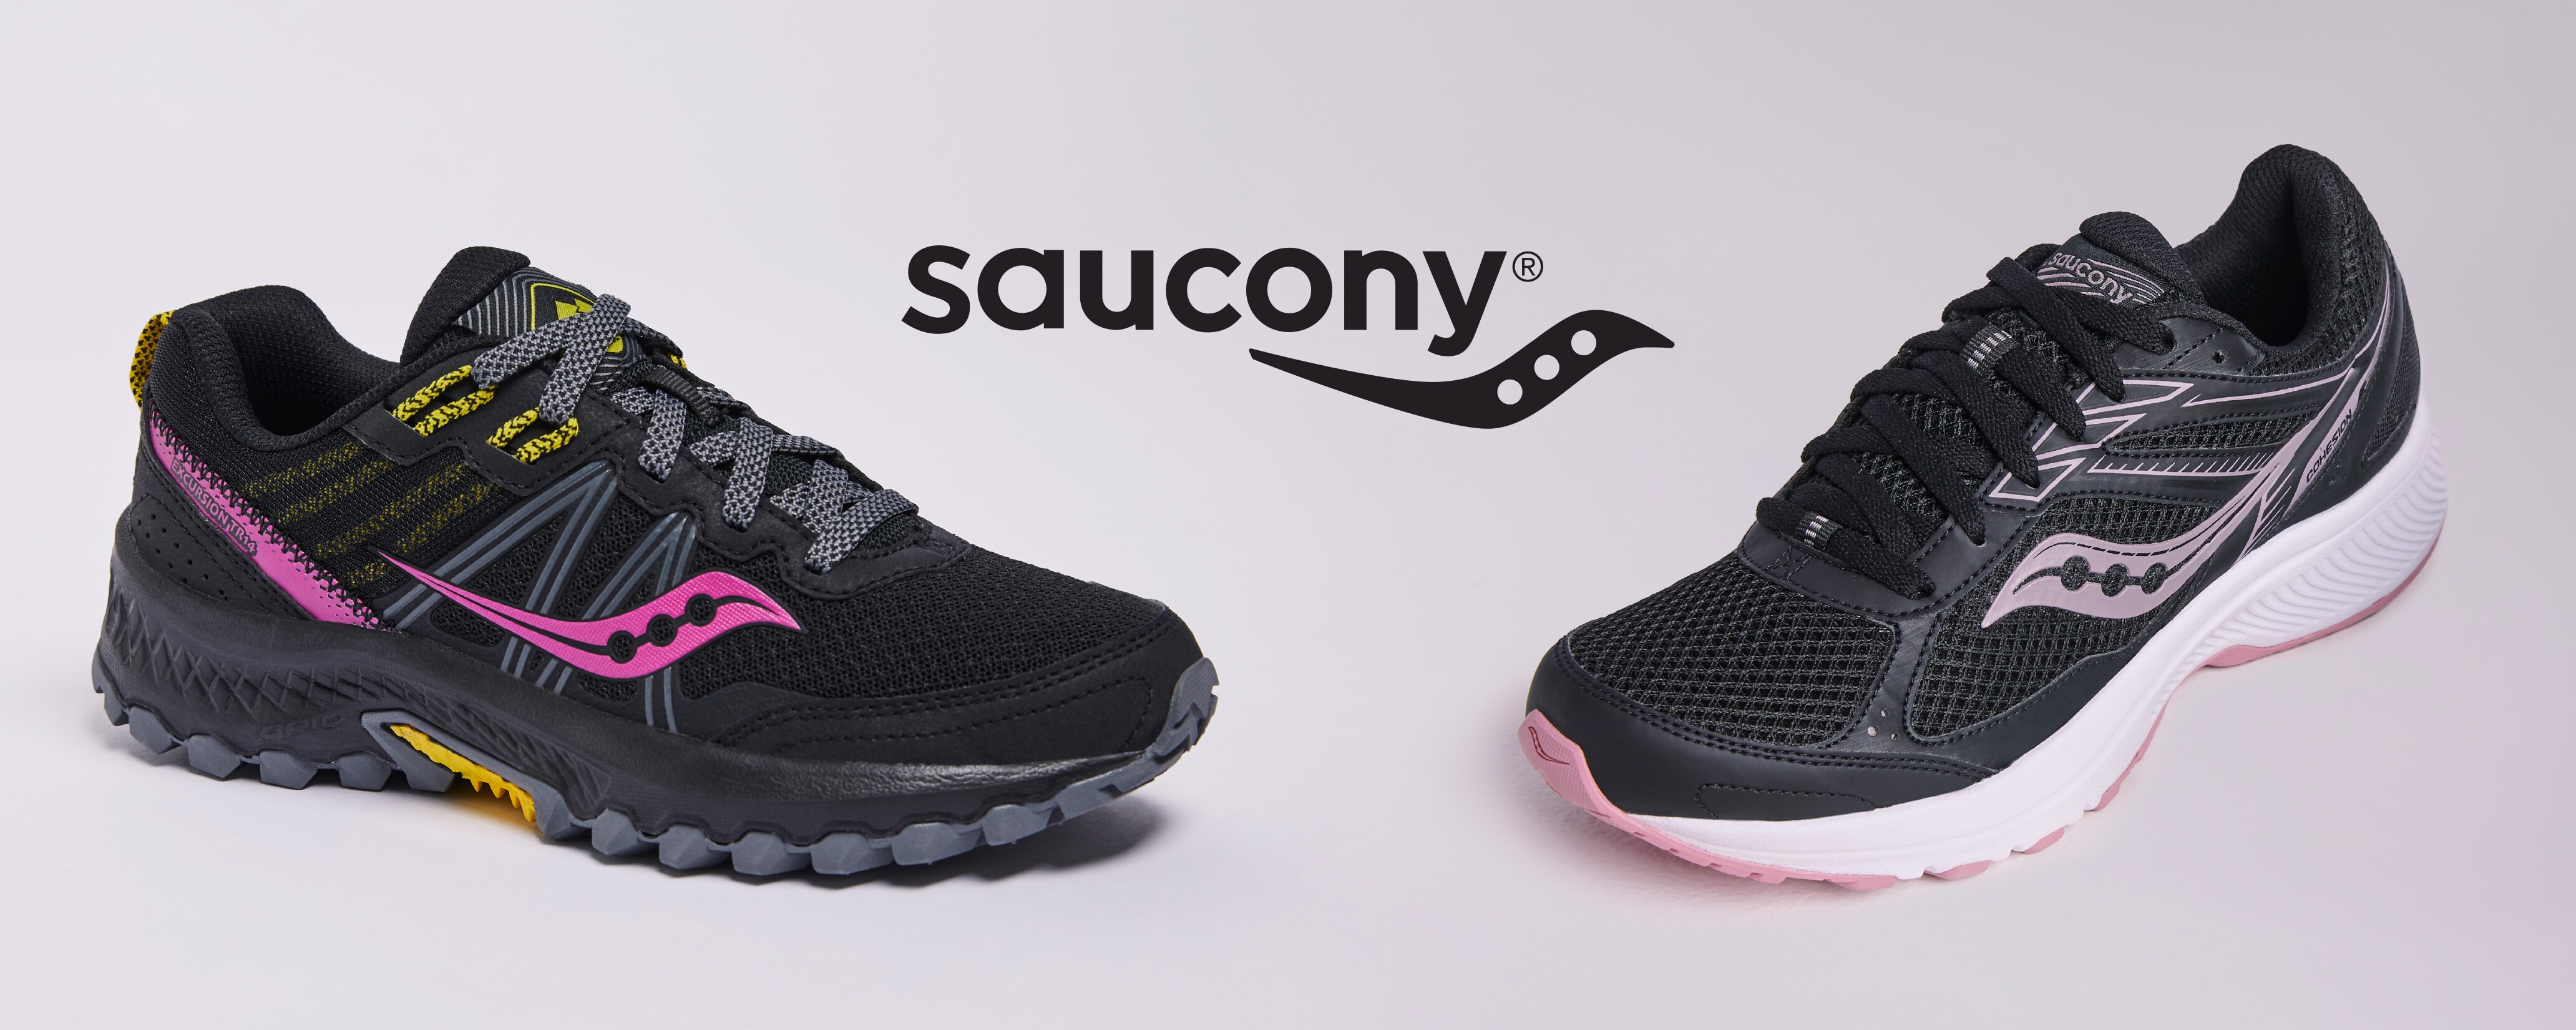 Saucony Shoes \u0026 Sneakers | Tennis \u0026 Running Shoes | DSW | DSW